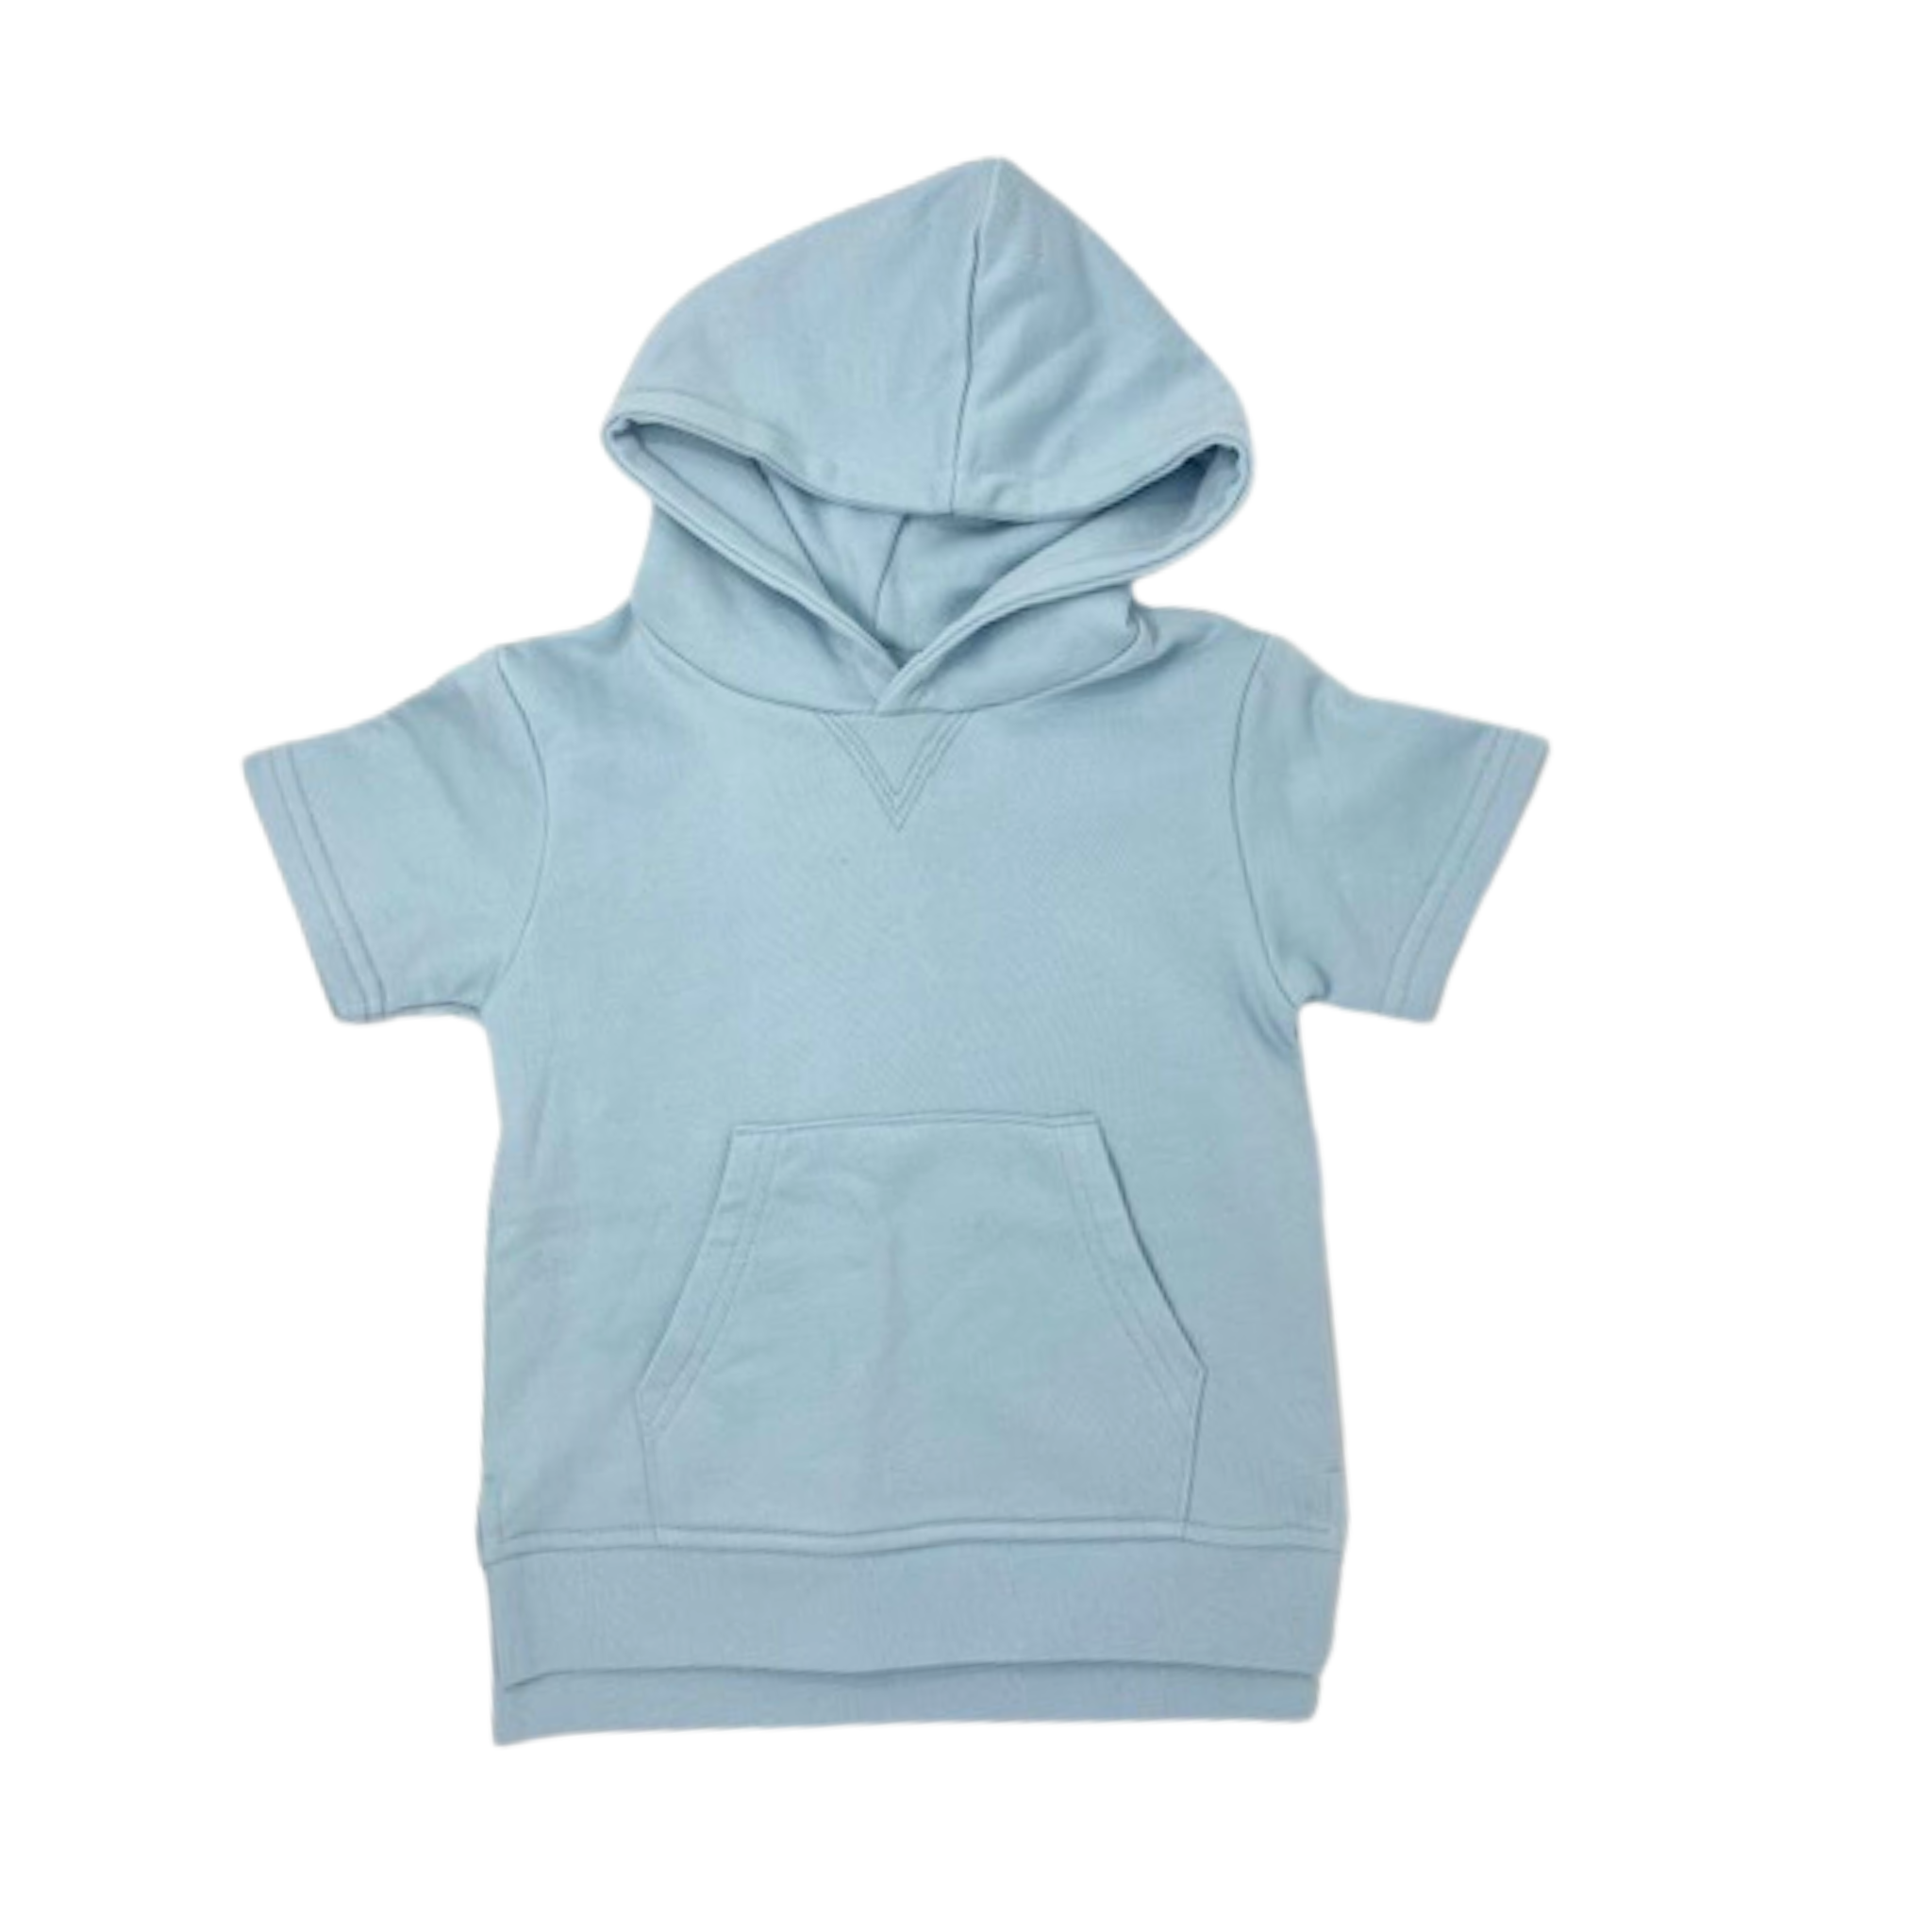 Blue short sleeve hoodie